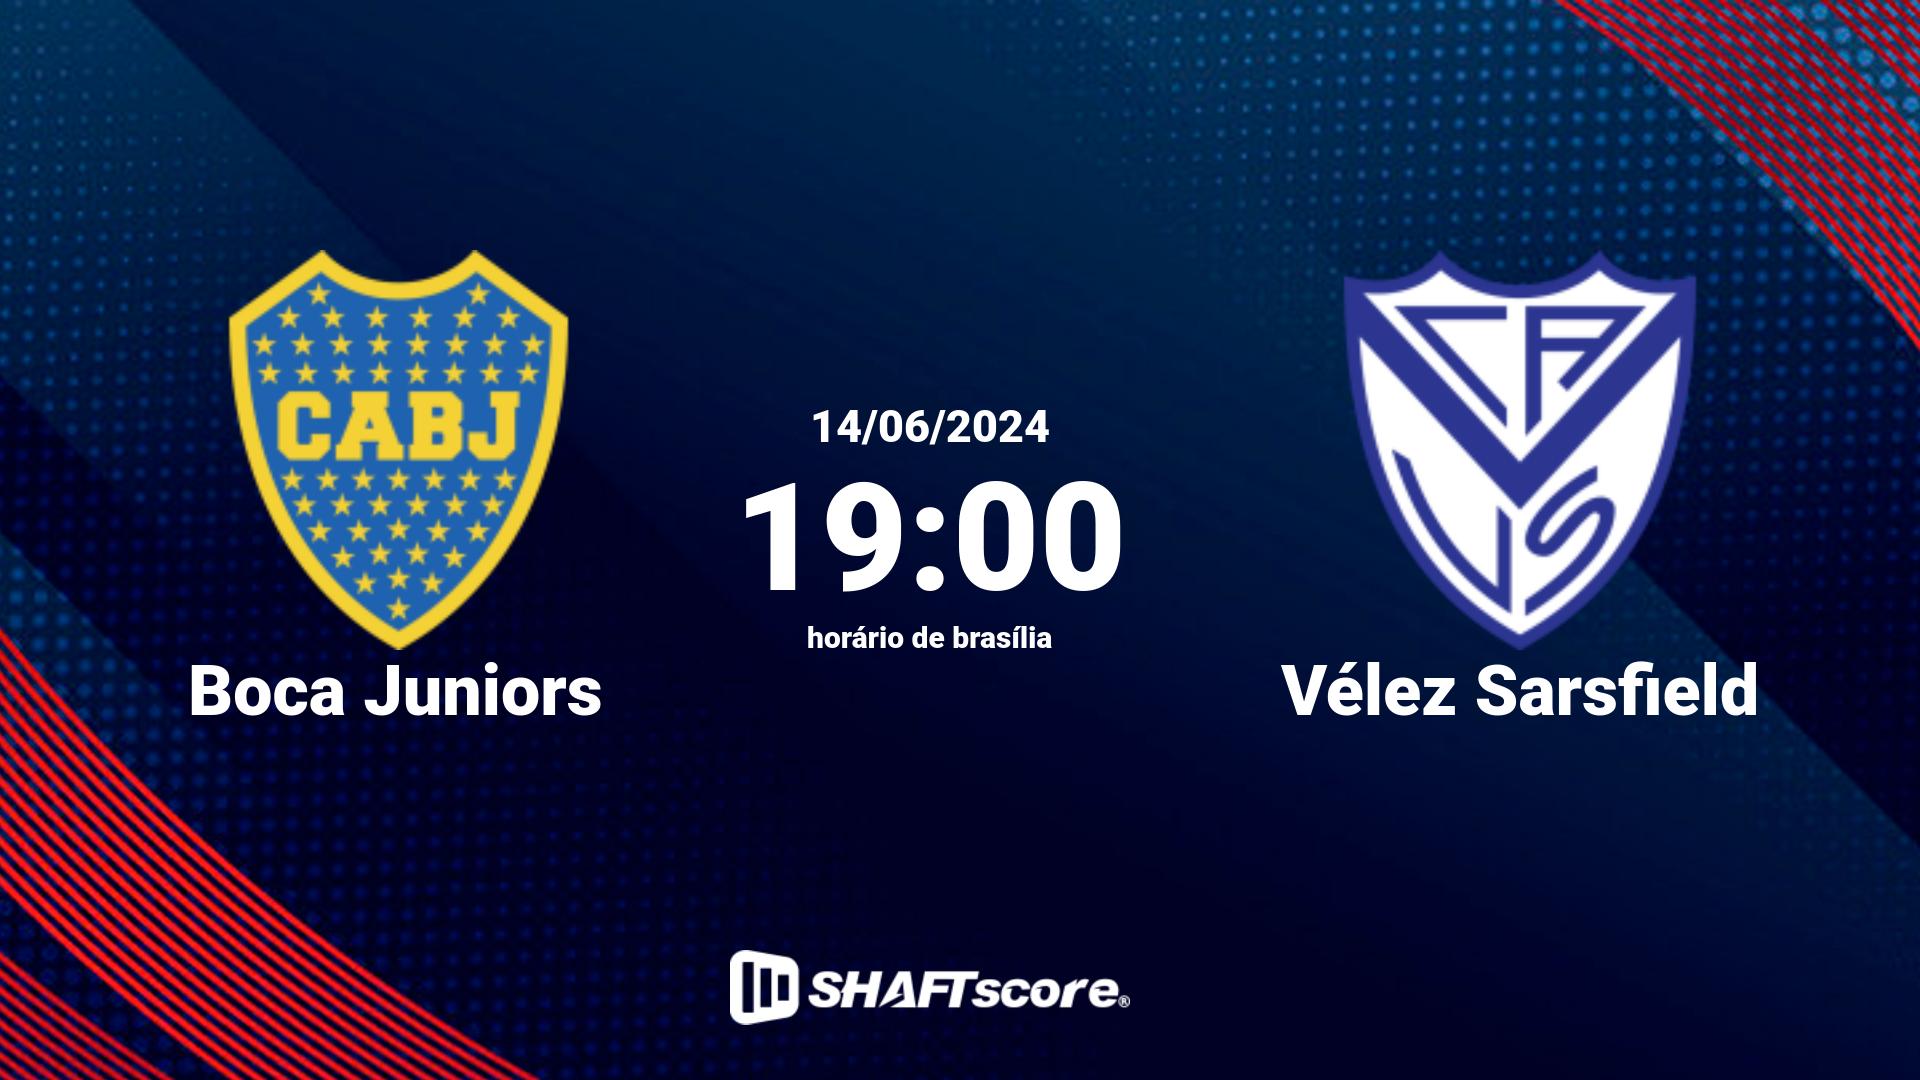 Estatísticas do jogo Boca Juniors vs Vélez Sarsfield 14.06 19:00